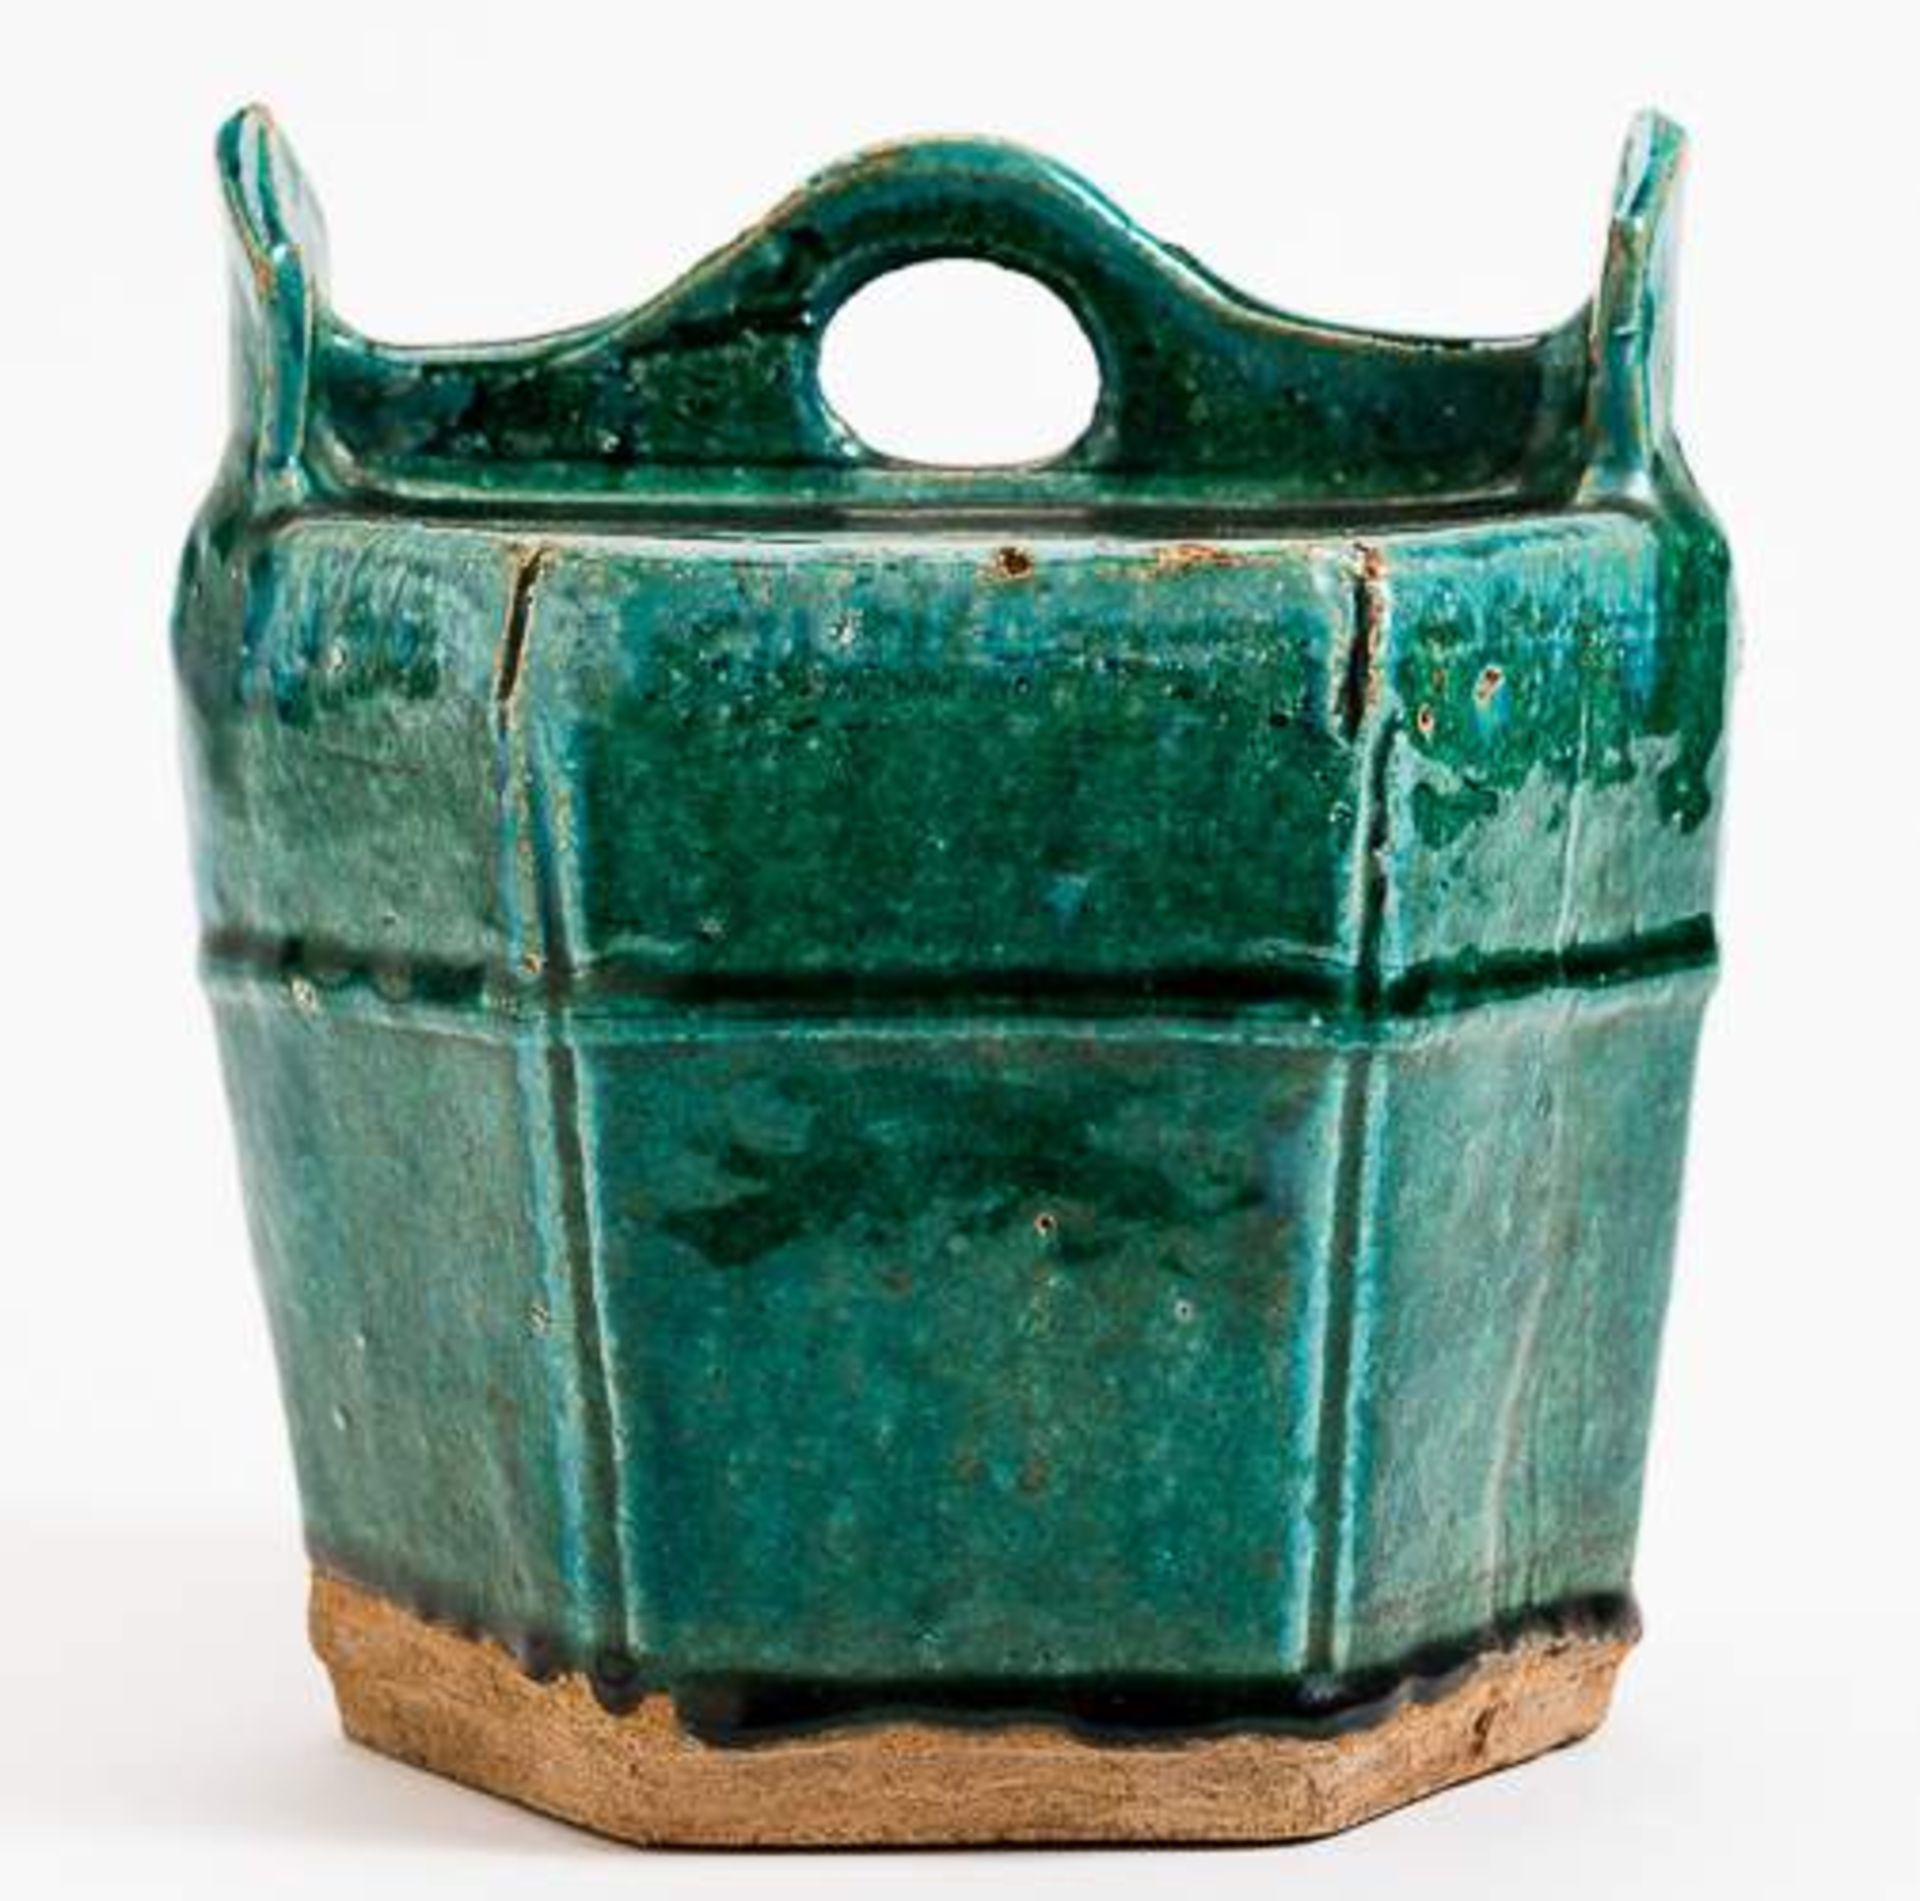 GEFÄSS IN FORM EINES WASSEREIMERS Grün glasierte Keramik. China, Qing, vermutlich 17. Jh. Dieses - Image 6 of 15